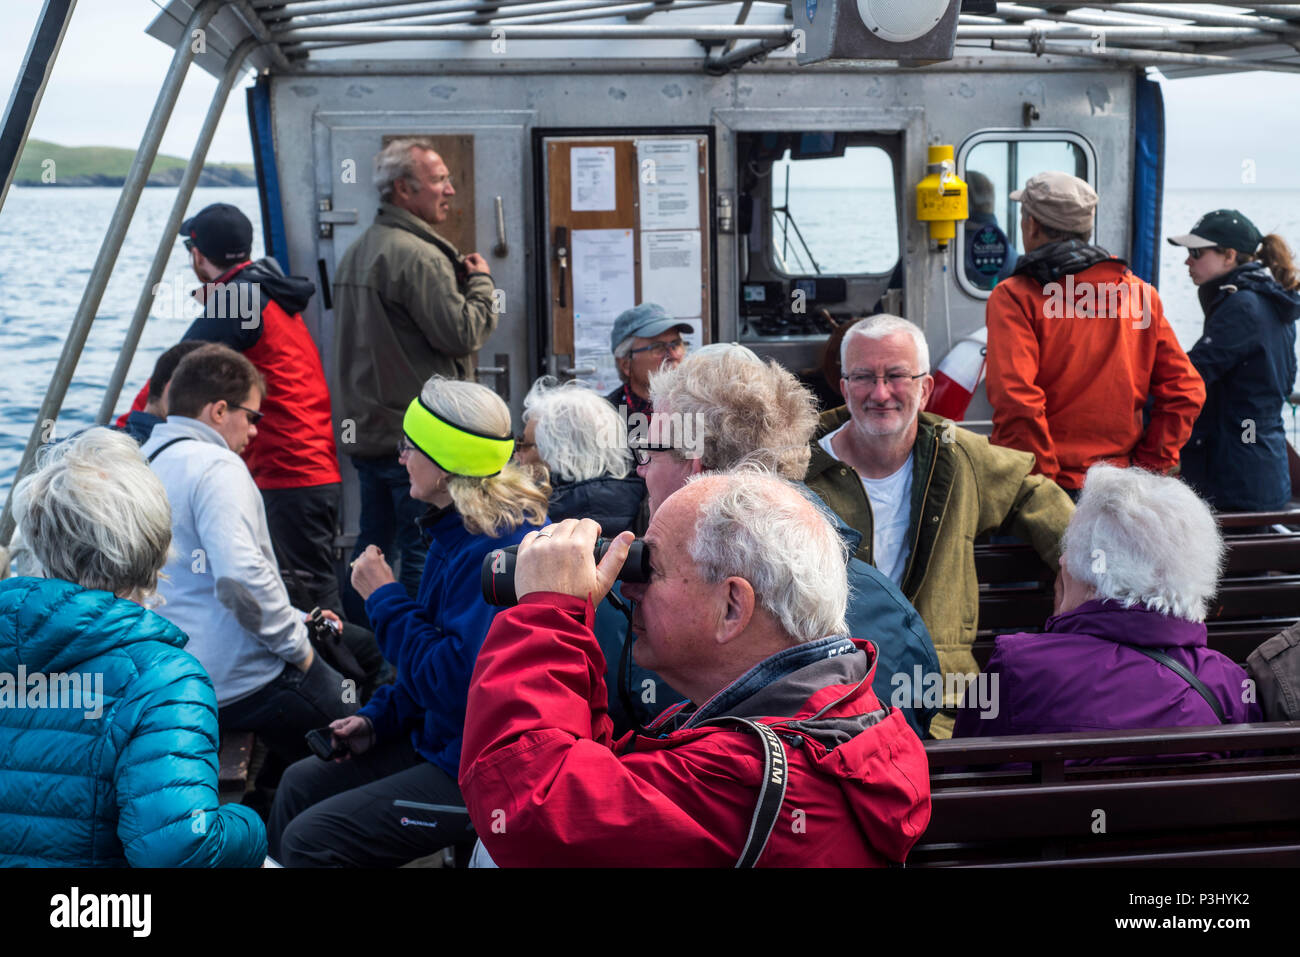 Anziani i turisti a bordo del passeggero aperto ferry boat Solan IV da Leebitton di Mousa la visione di uccelli marini, isole Shetland, Scotland, Regno Unito Foto Stock